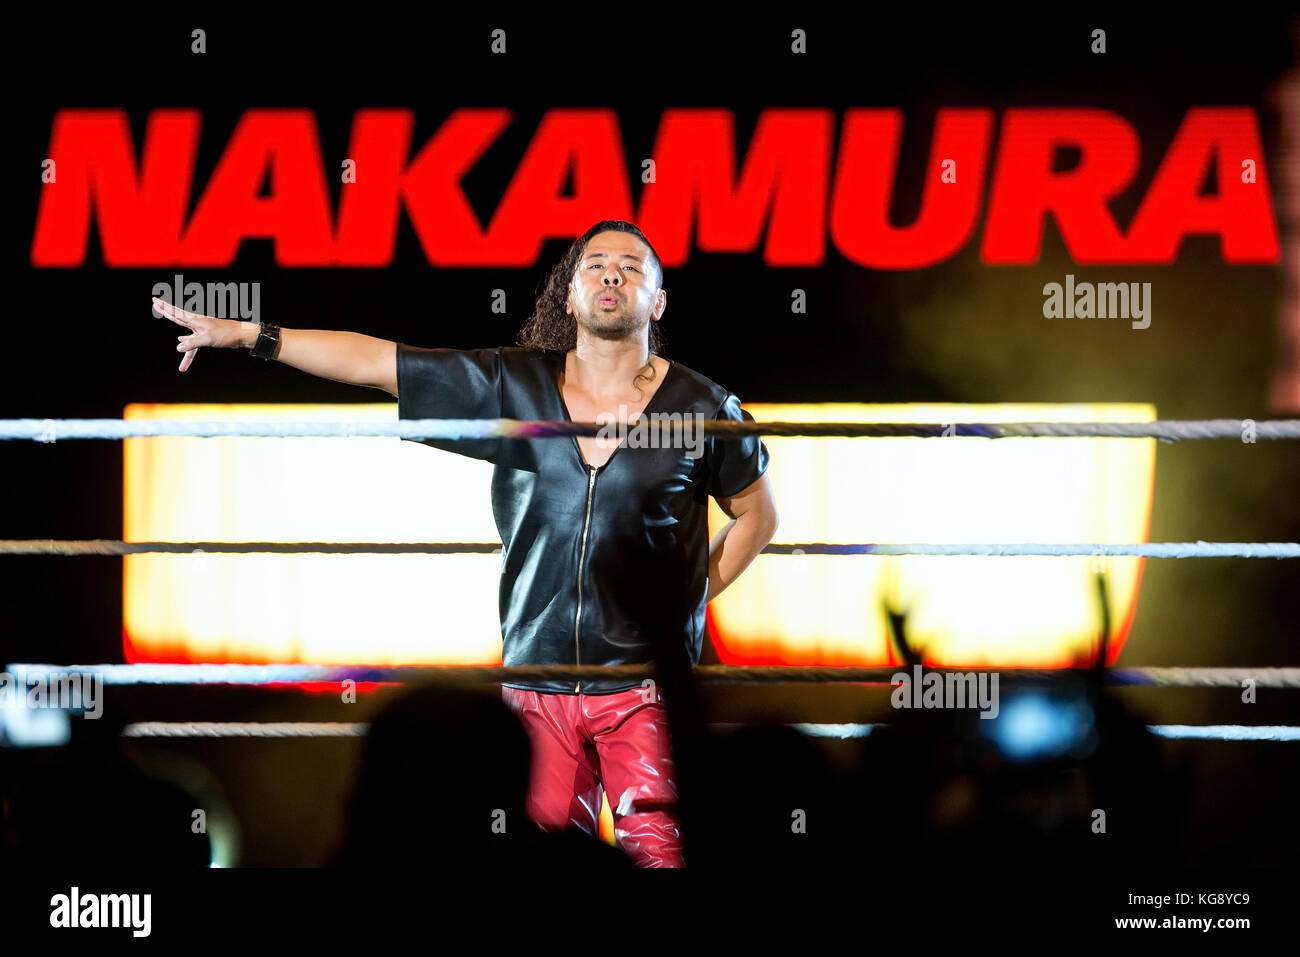 BARCELONA - NOV 4: The wrestler Shinsuke Nakamura in action at WWE Live at the Palau Sant Jordi on November 4, 2017 in Barcelona, Spain. Stock Photo